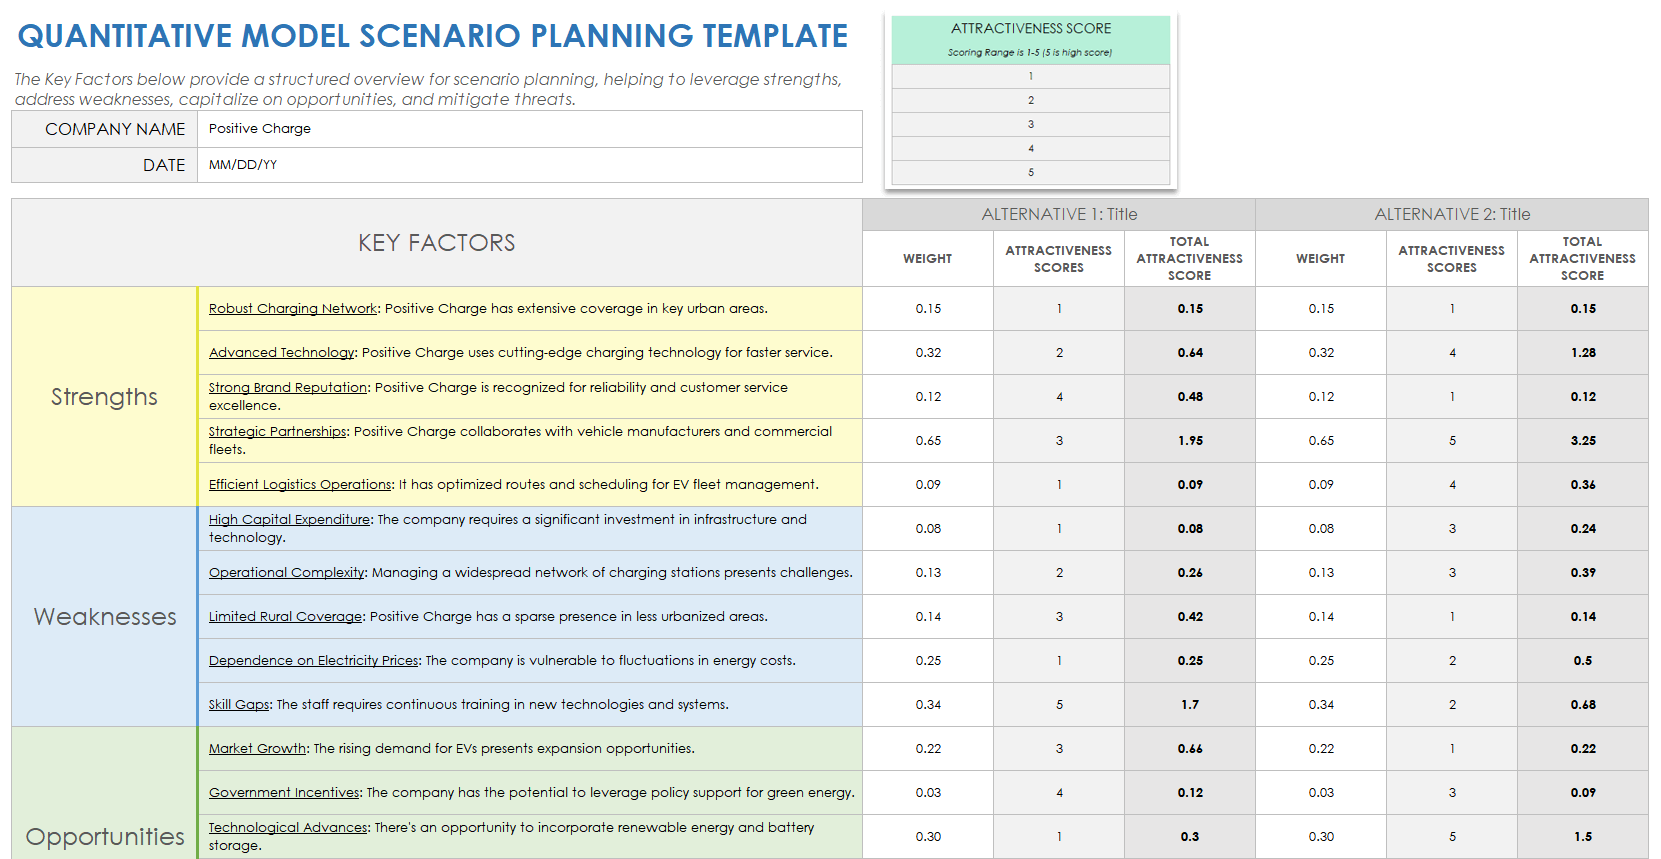 Quantitative Model Scenario Planning Template